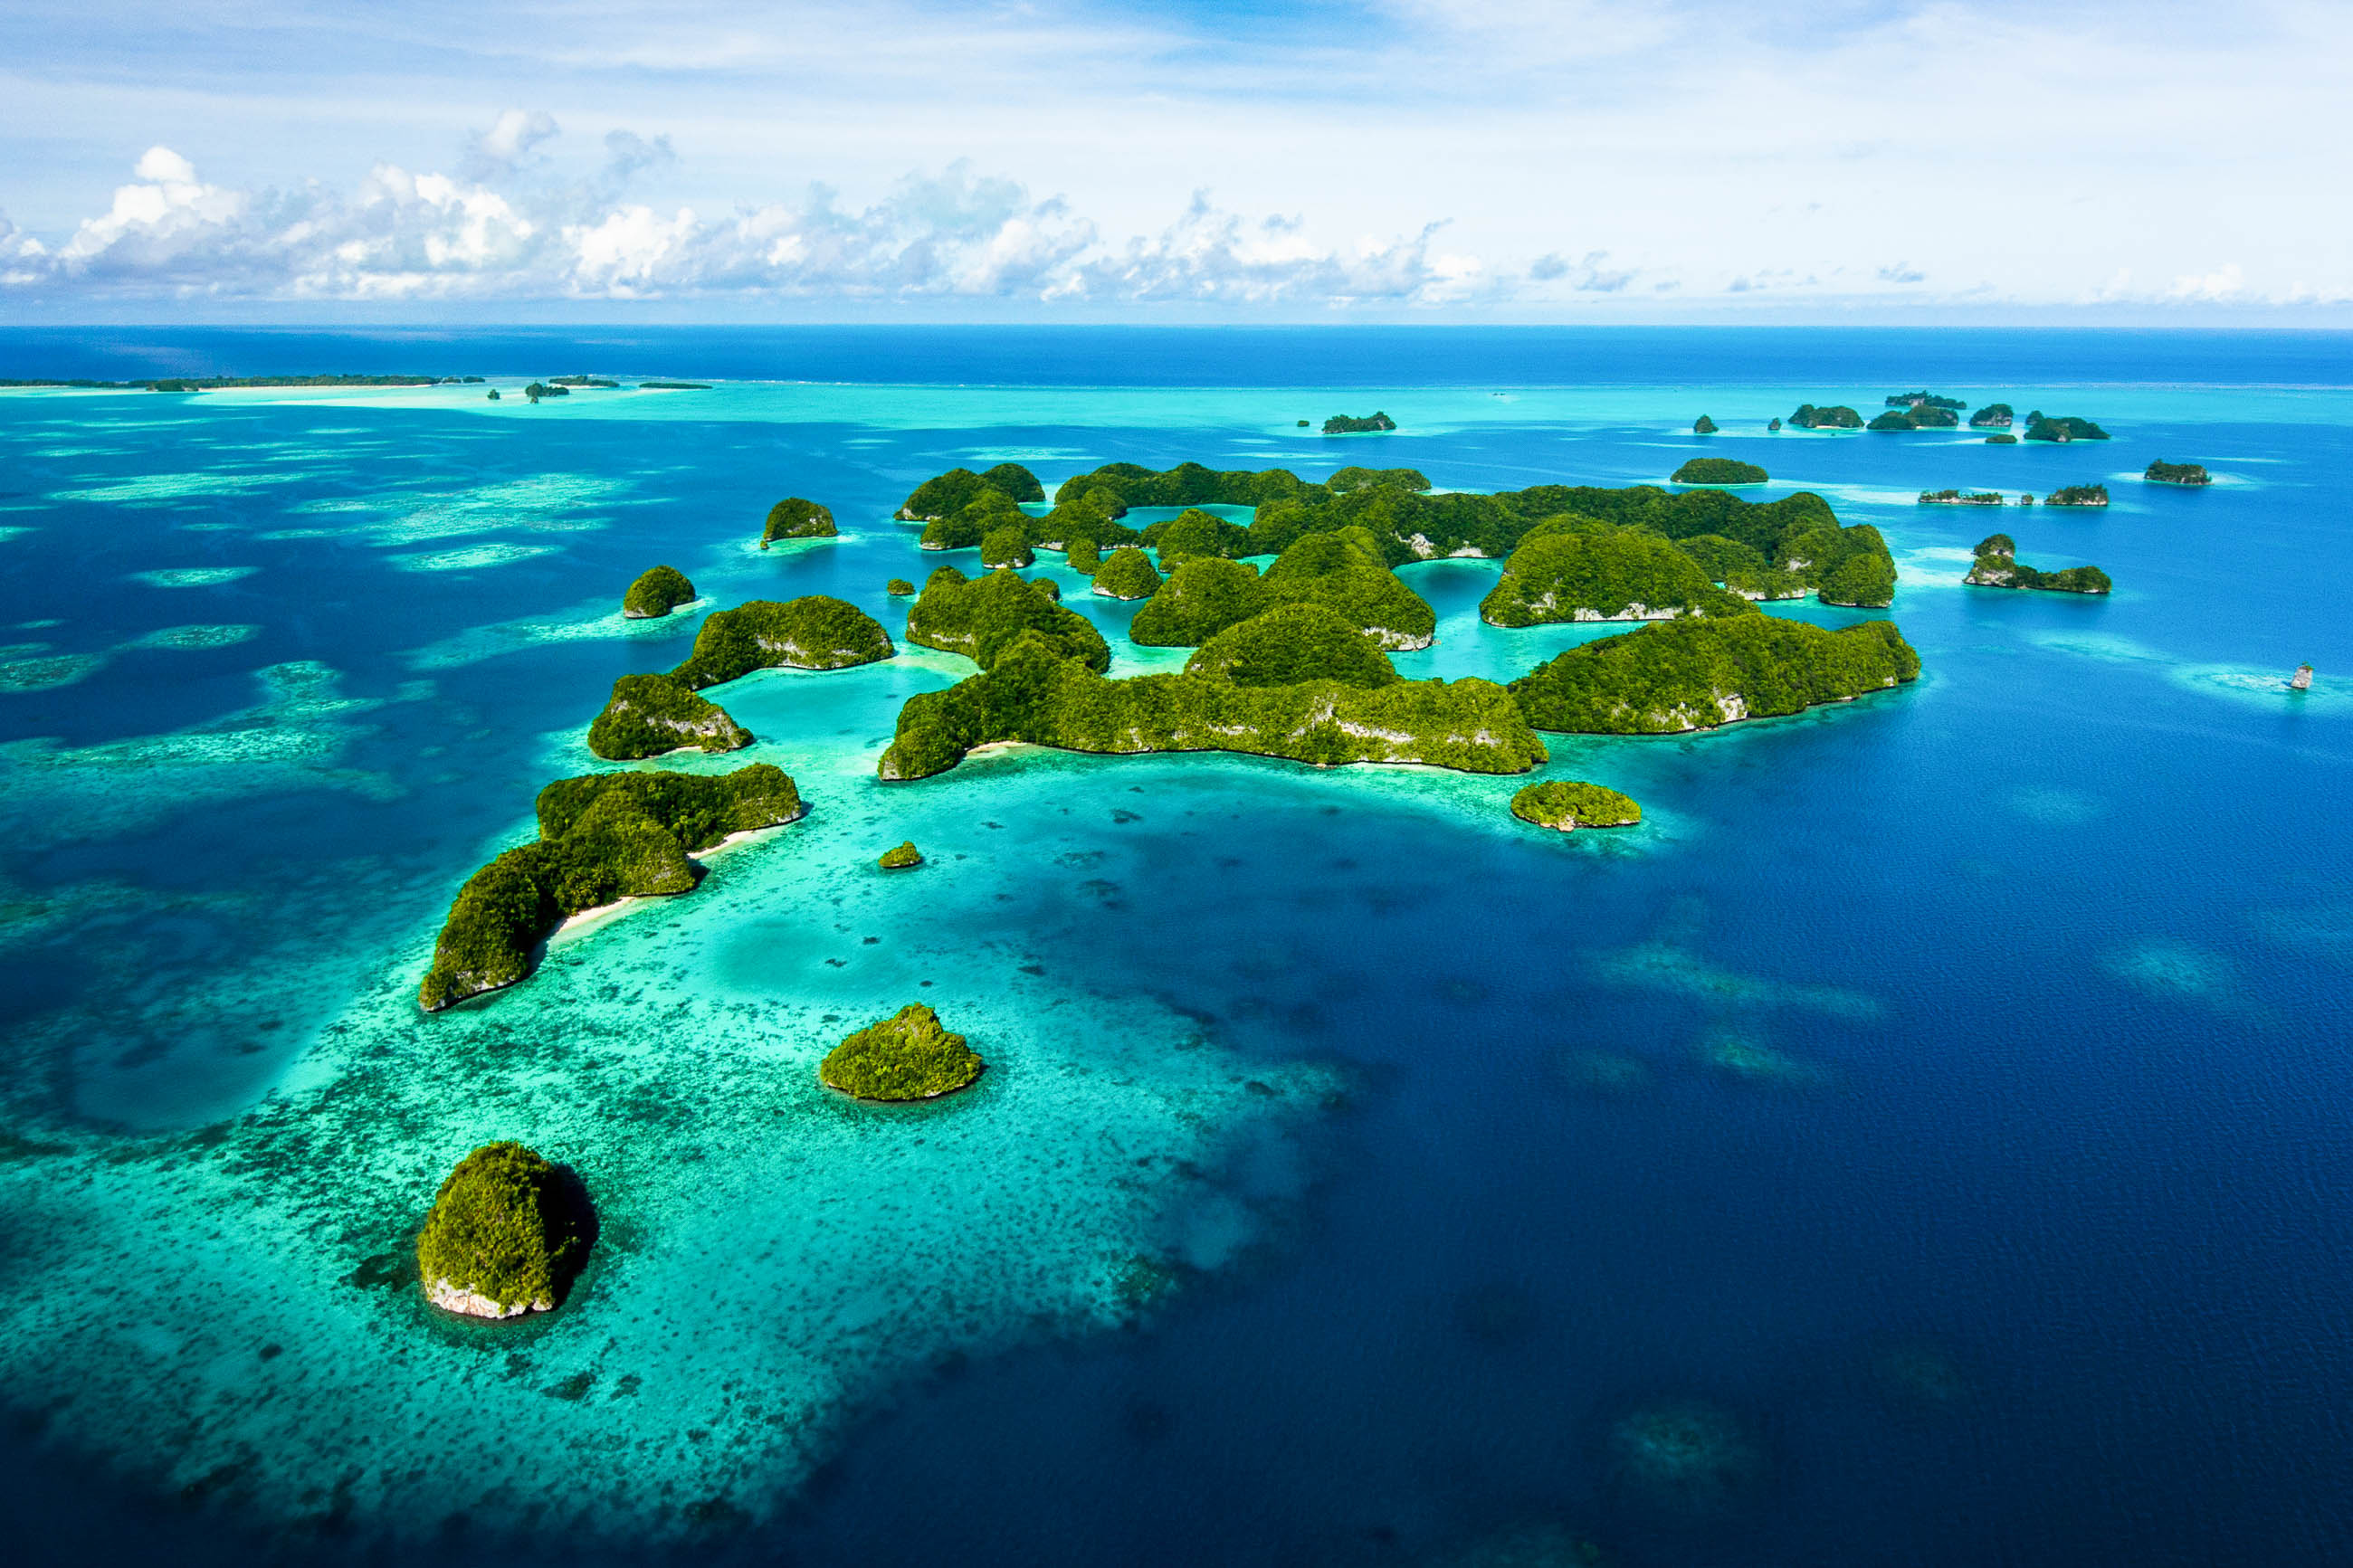 Самое большое скопление островов в мировом океане. Остров Палау Микронезия. Федеративные штаты Микронезии. Каролинские острова Атолл. Атоллы Микронезии.